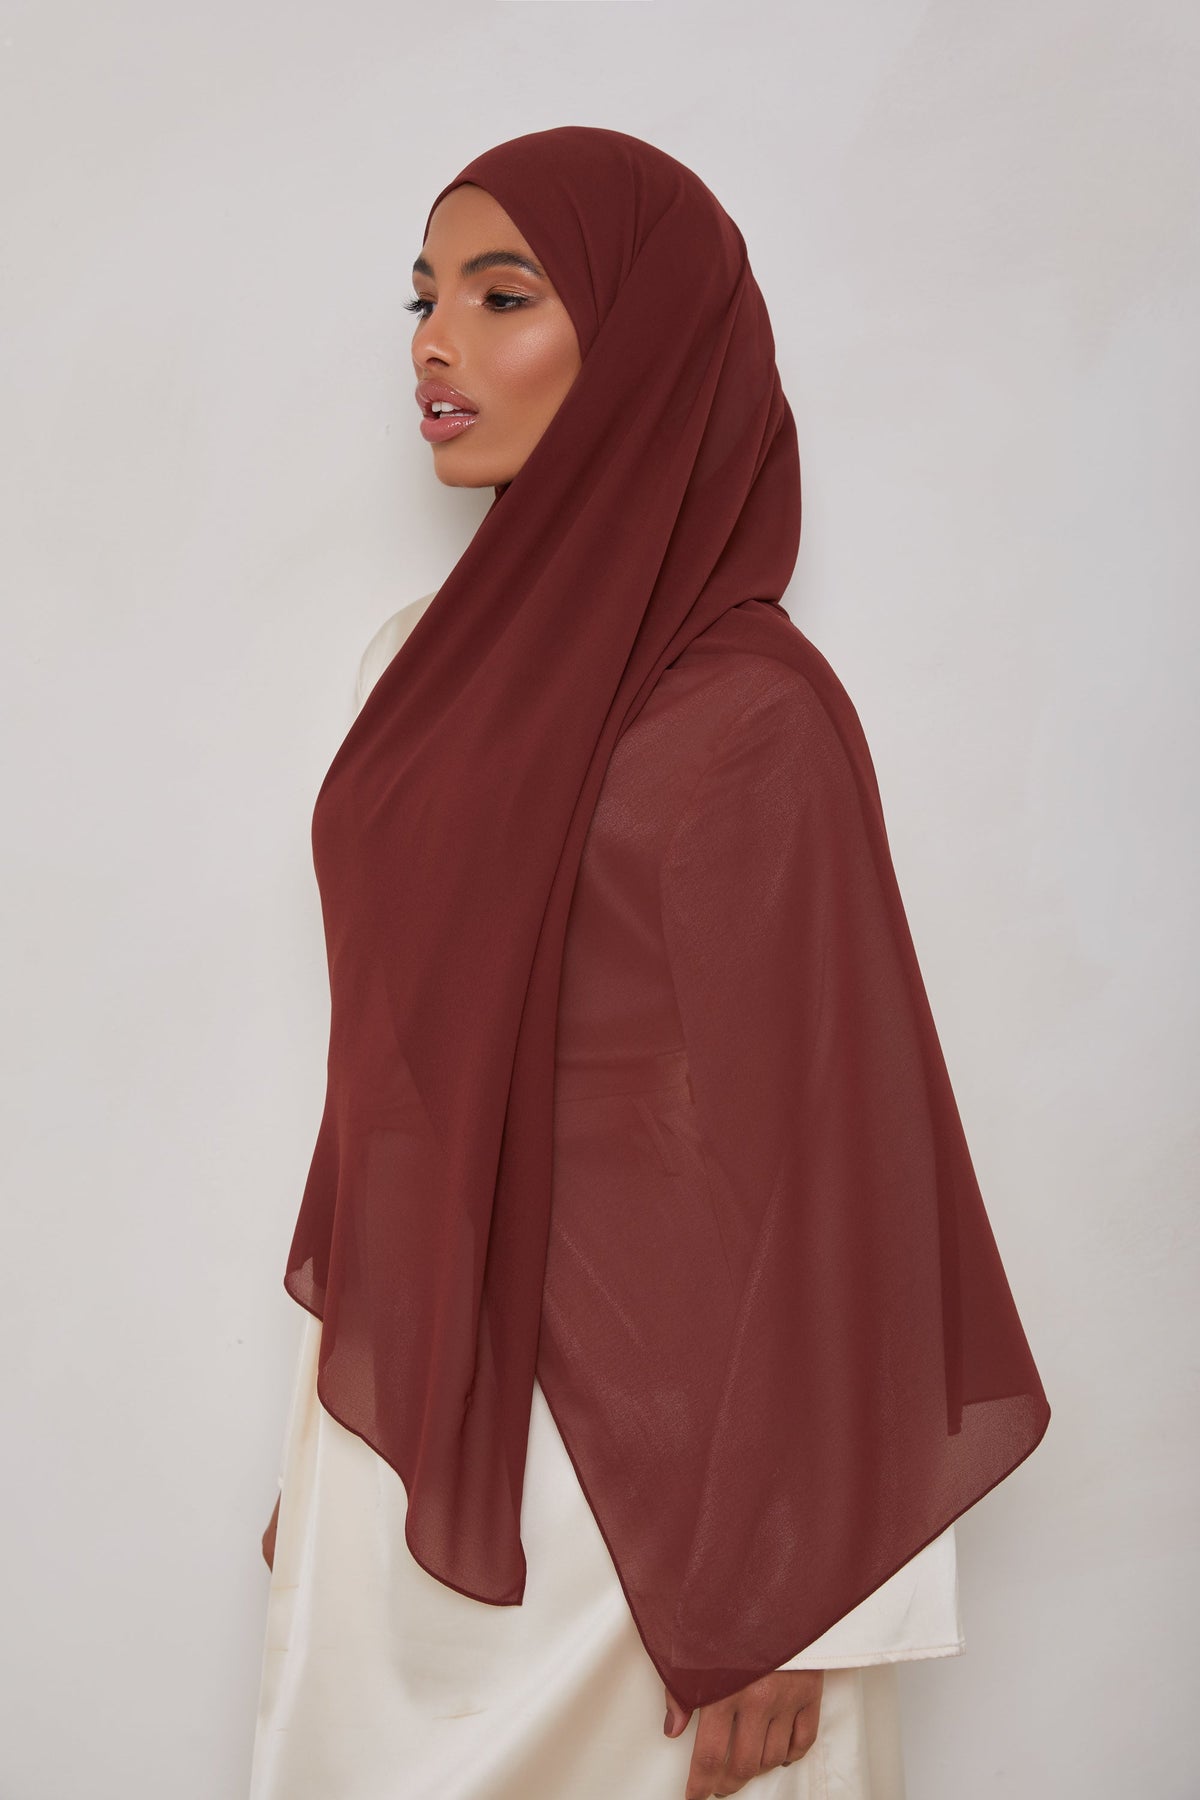 Essential Chiffon Hijab - Sable Scarves & Shawls saigonodysseyhotel 